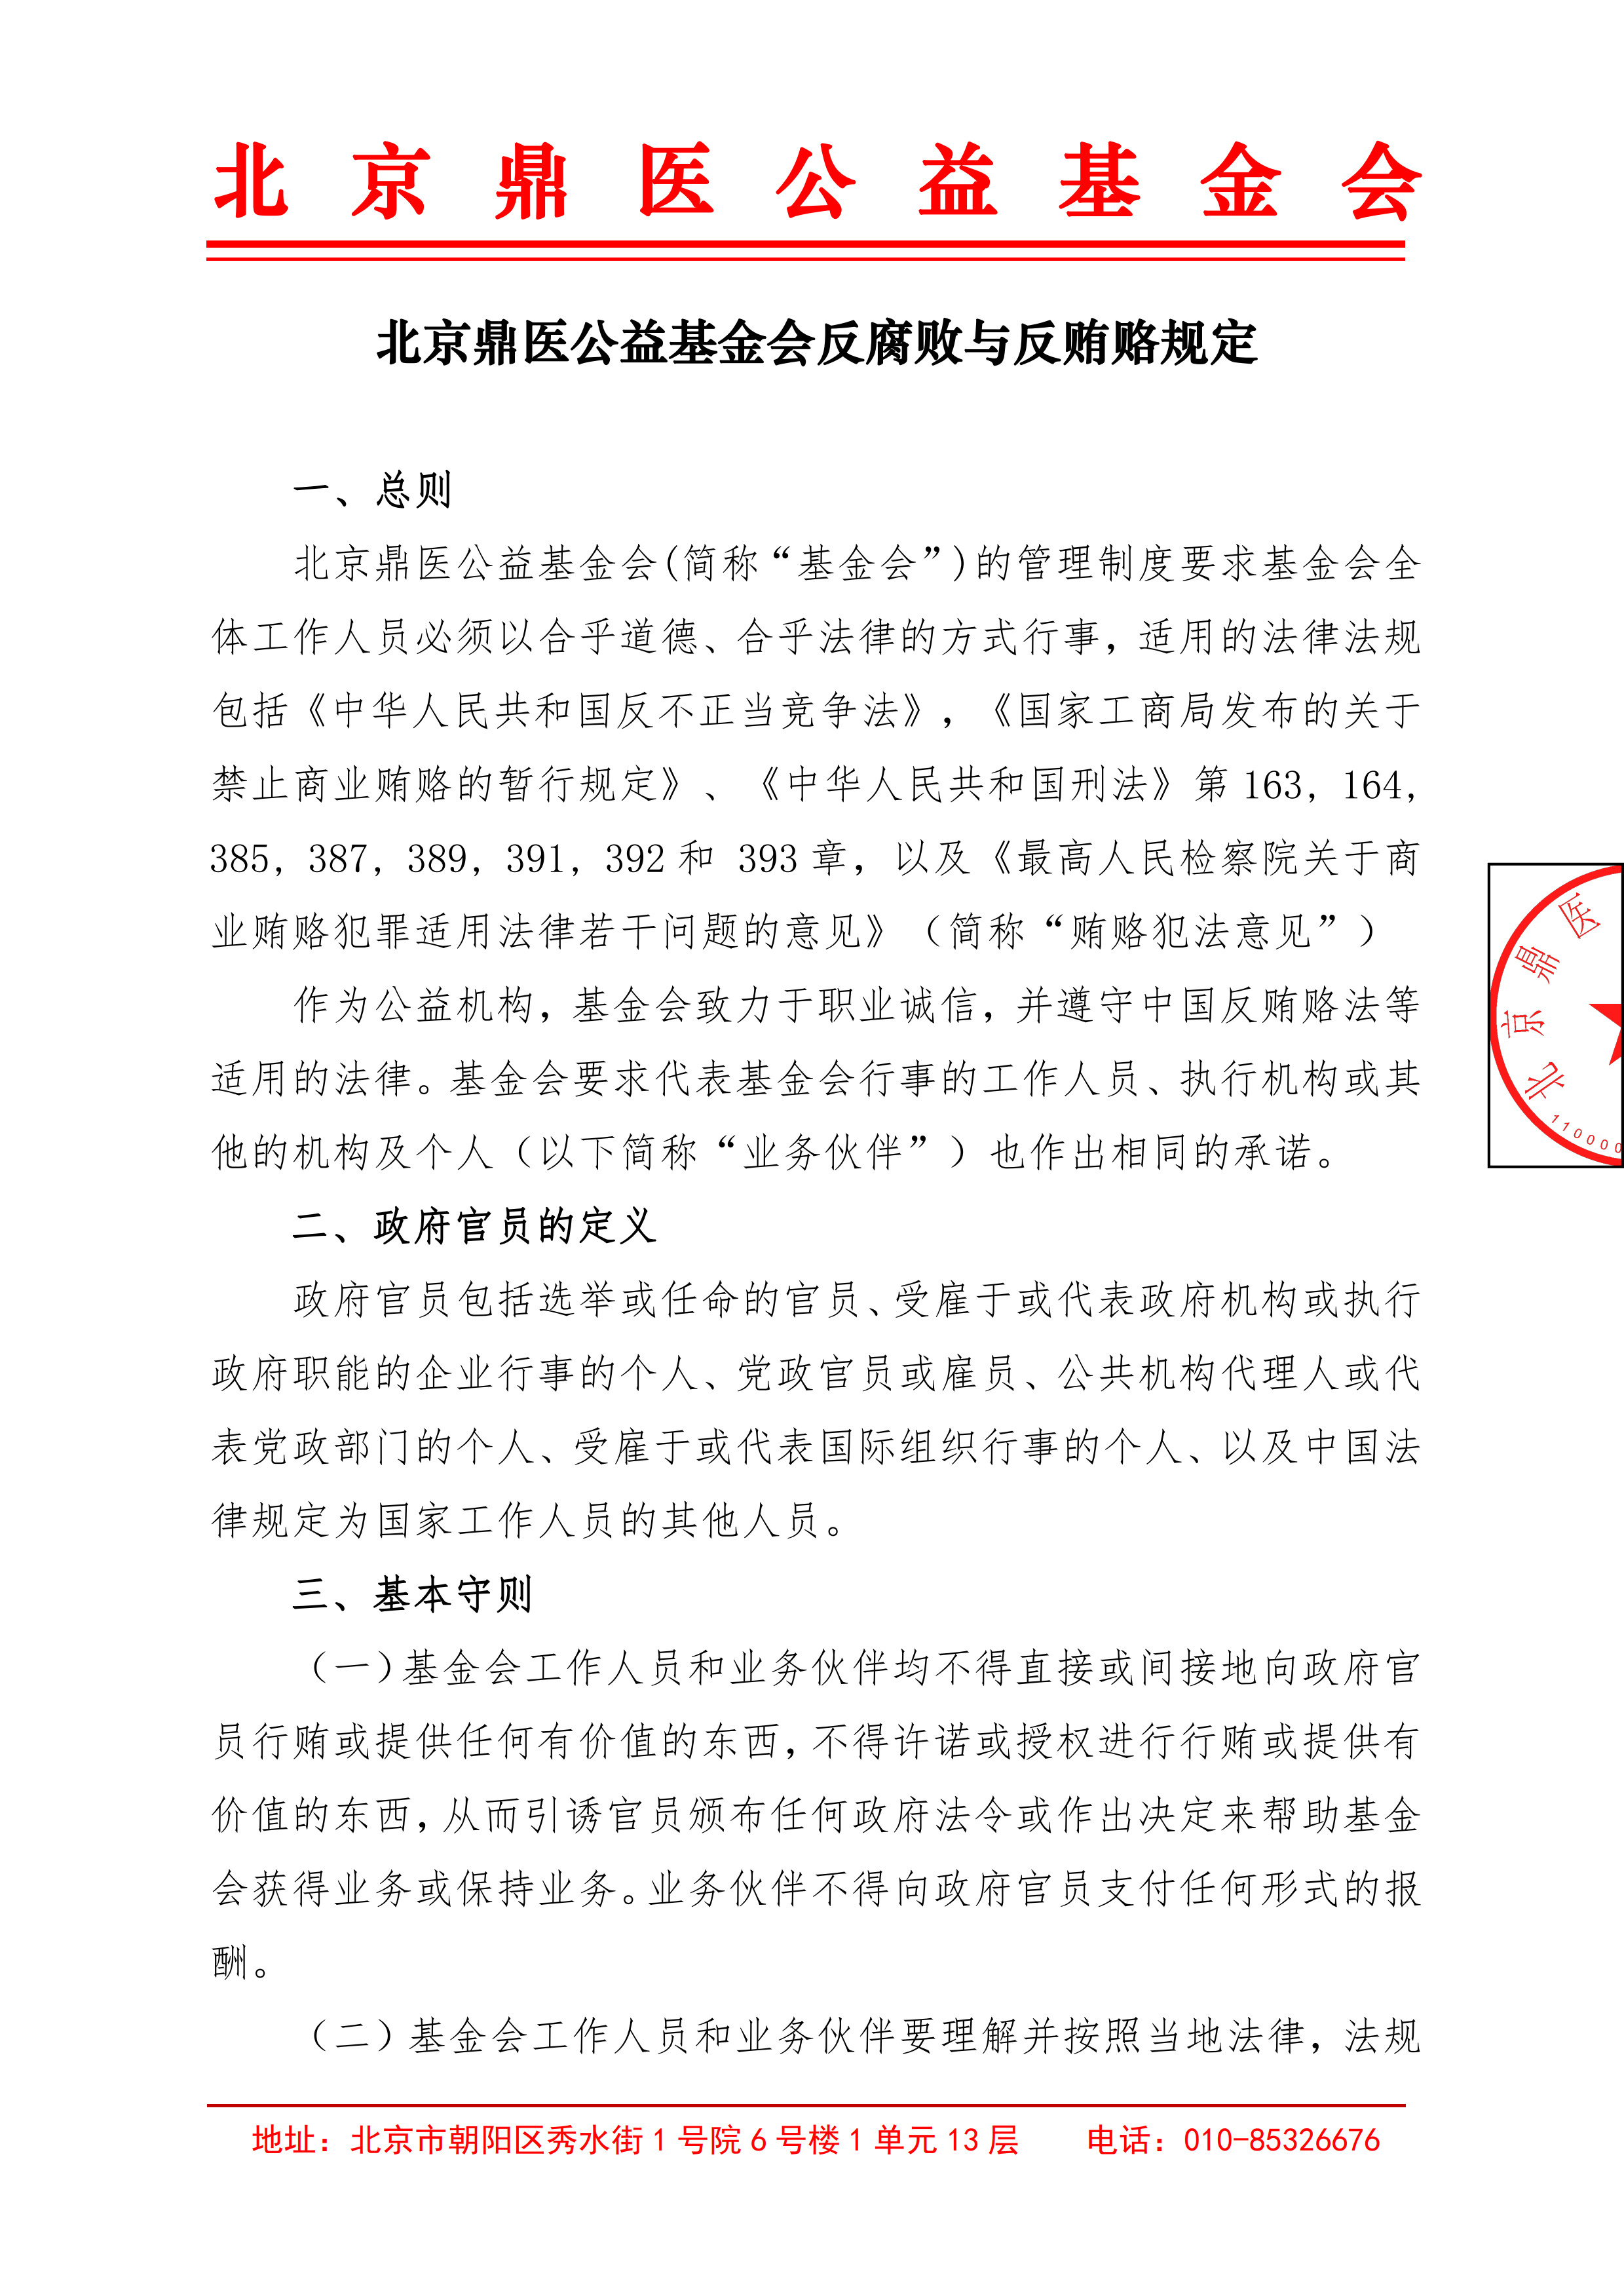 北京鼎医公益基金会反腐败与反贿赂规定1